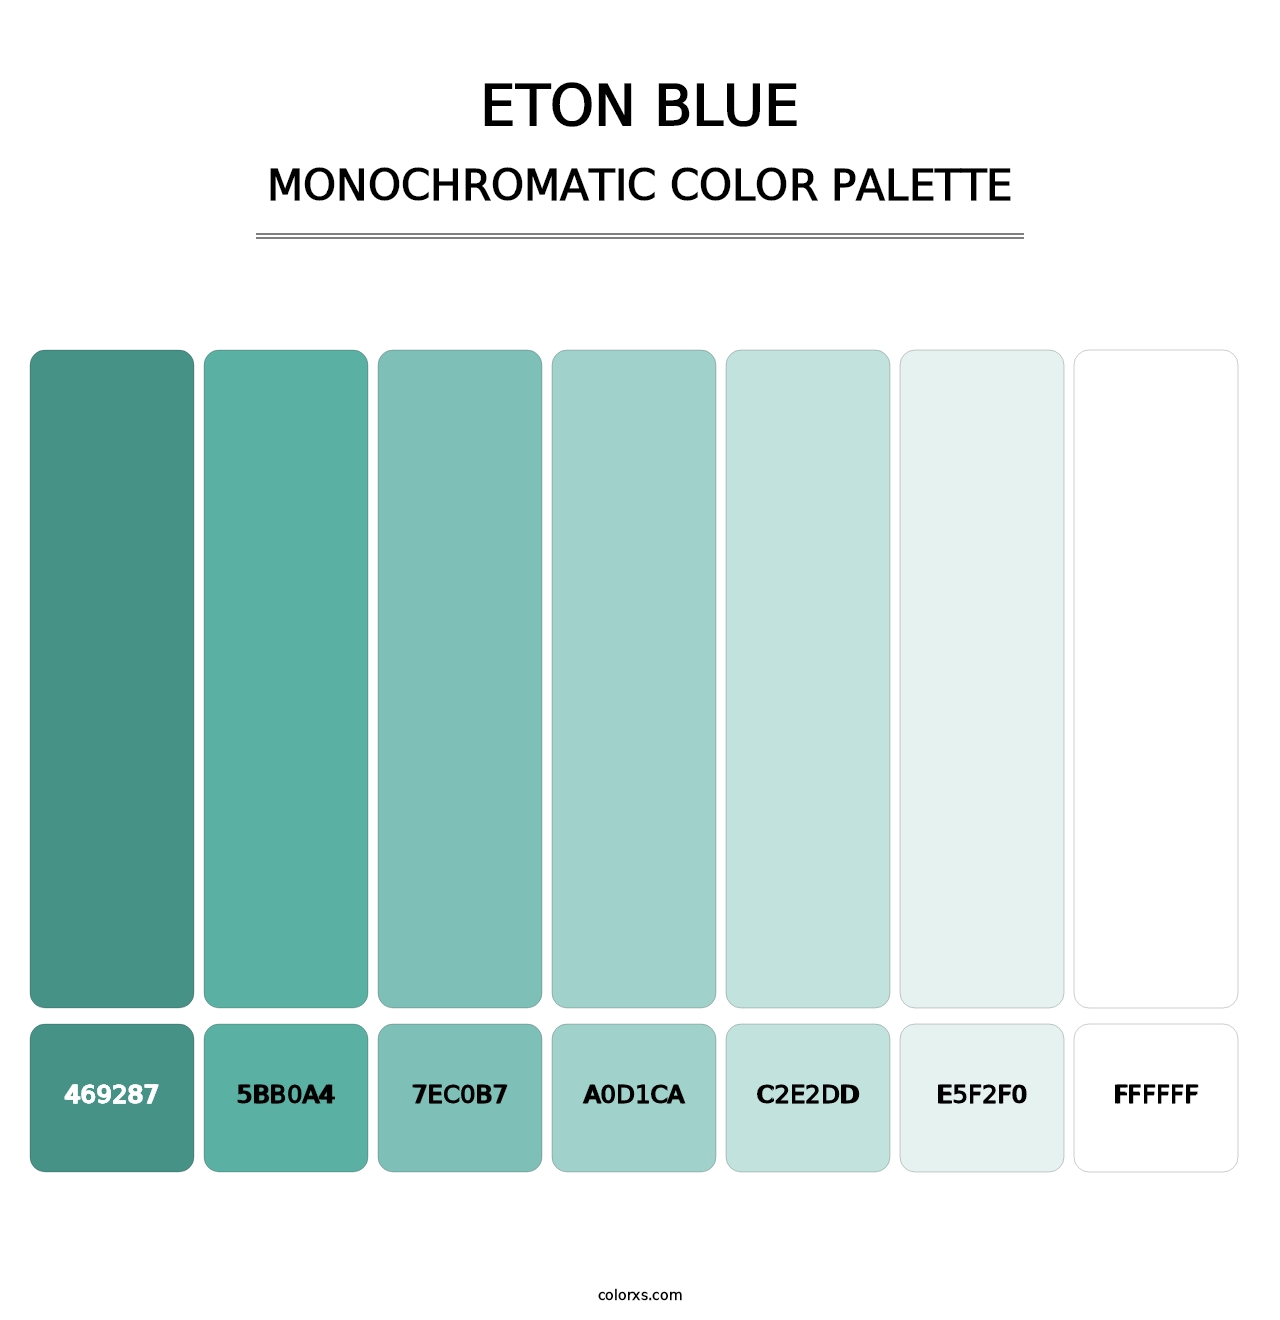 Eton blue - Monochromatic Color Palette